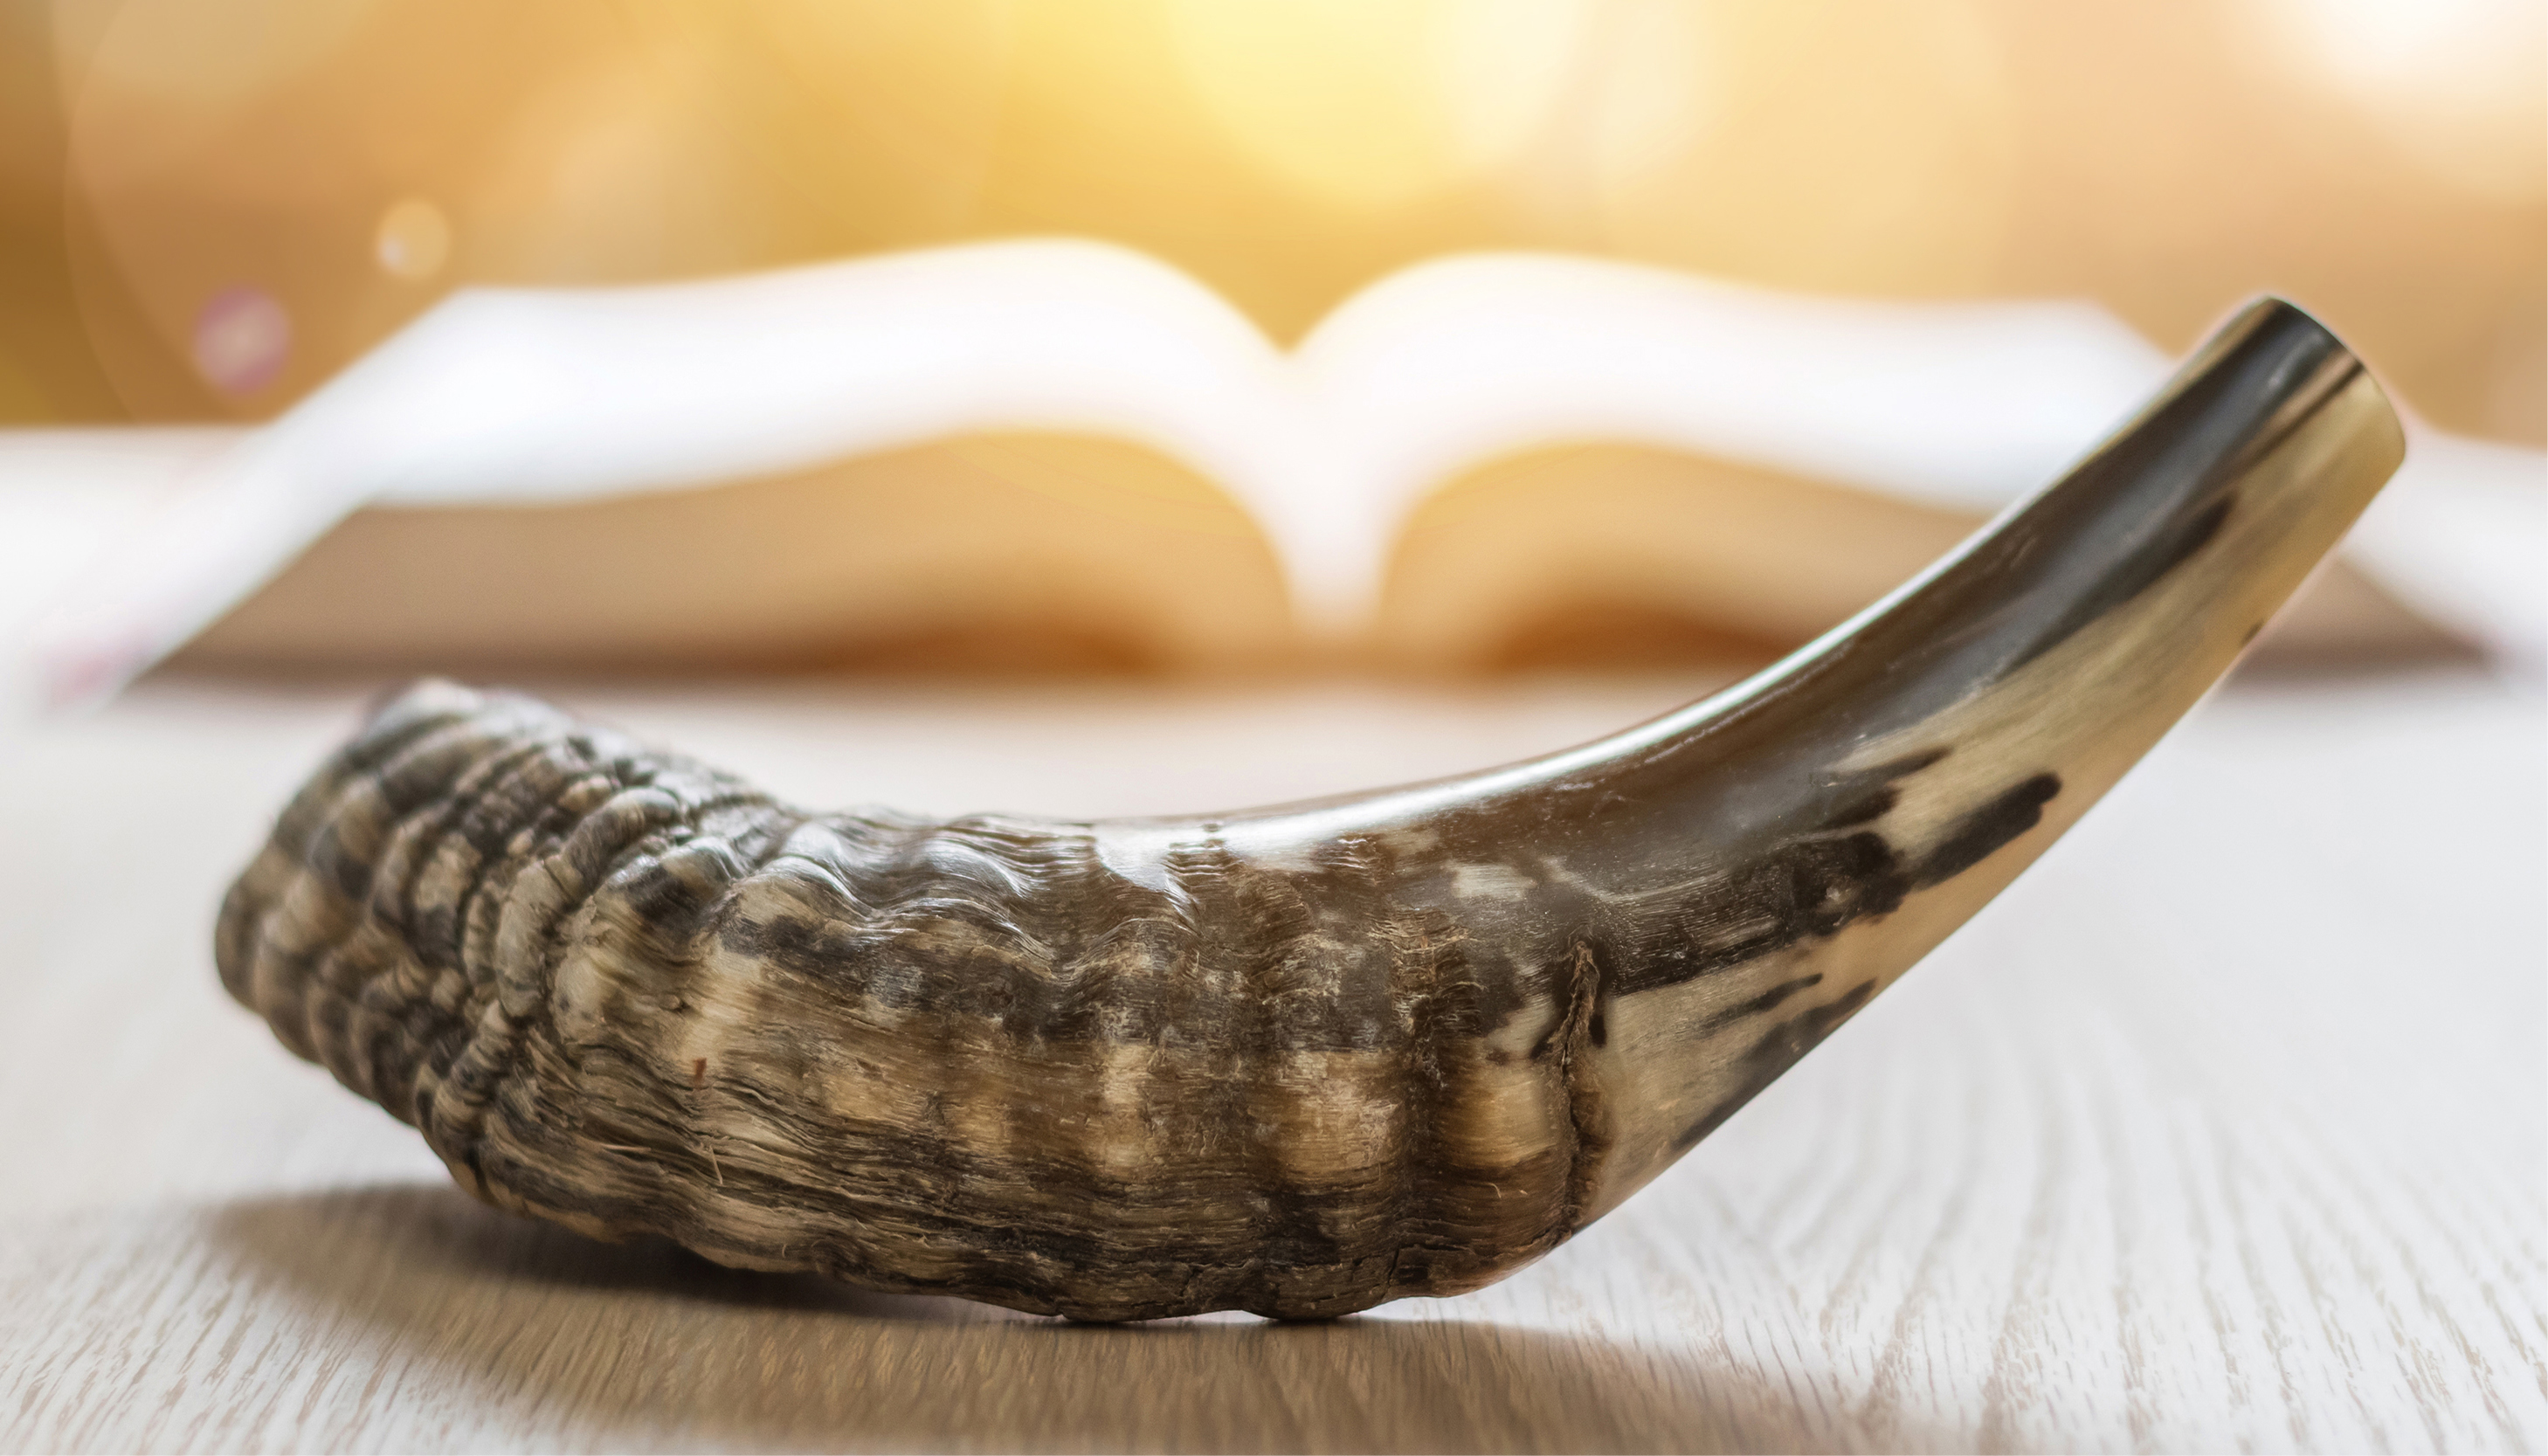 Yom Kippor prayer book and shofar